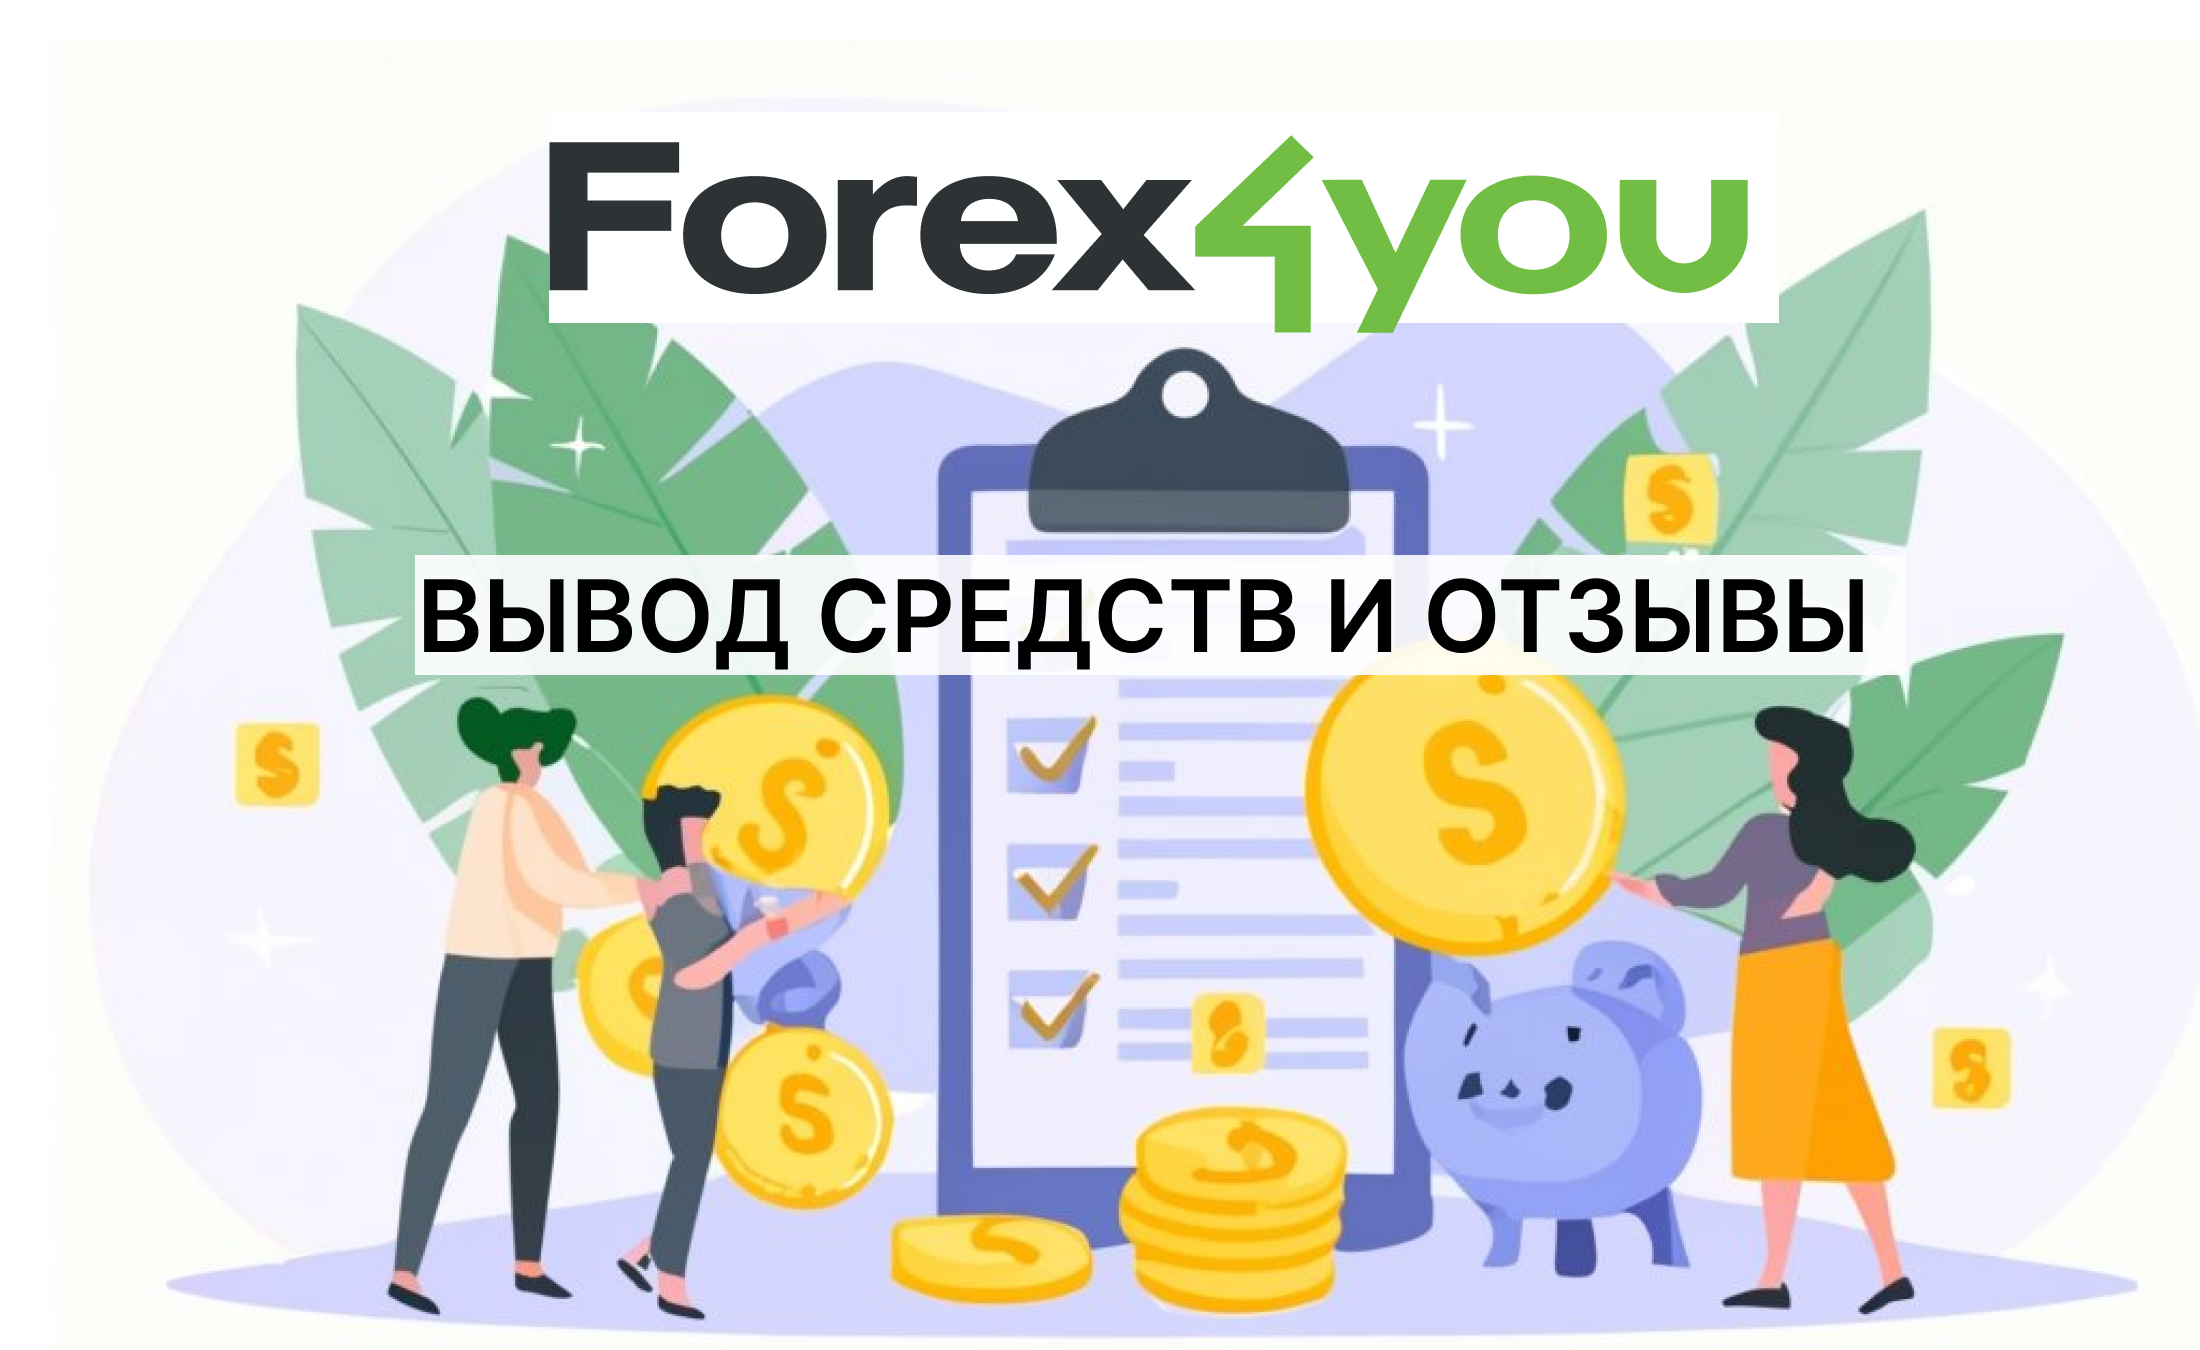 Forex4you вывод средств и отзывы